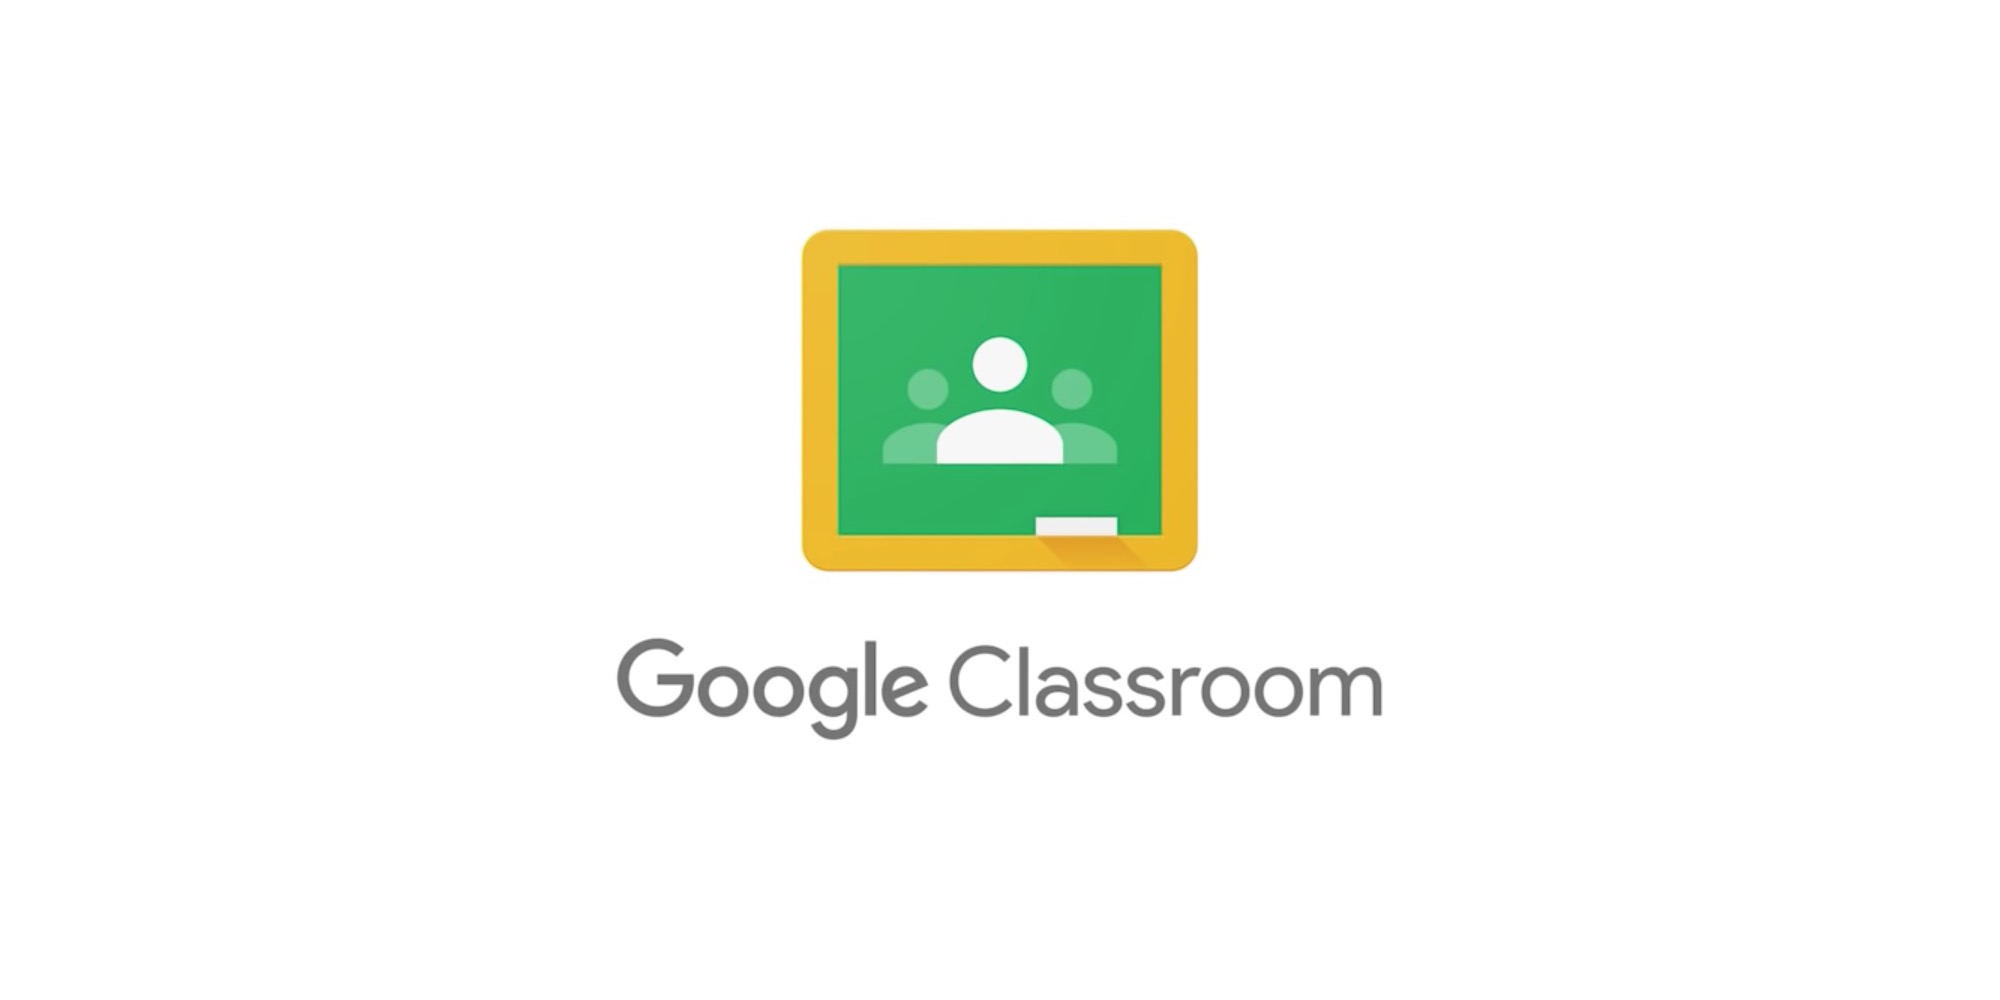 Google Classroom è l'app di istruzione più popolare su Android e iOS